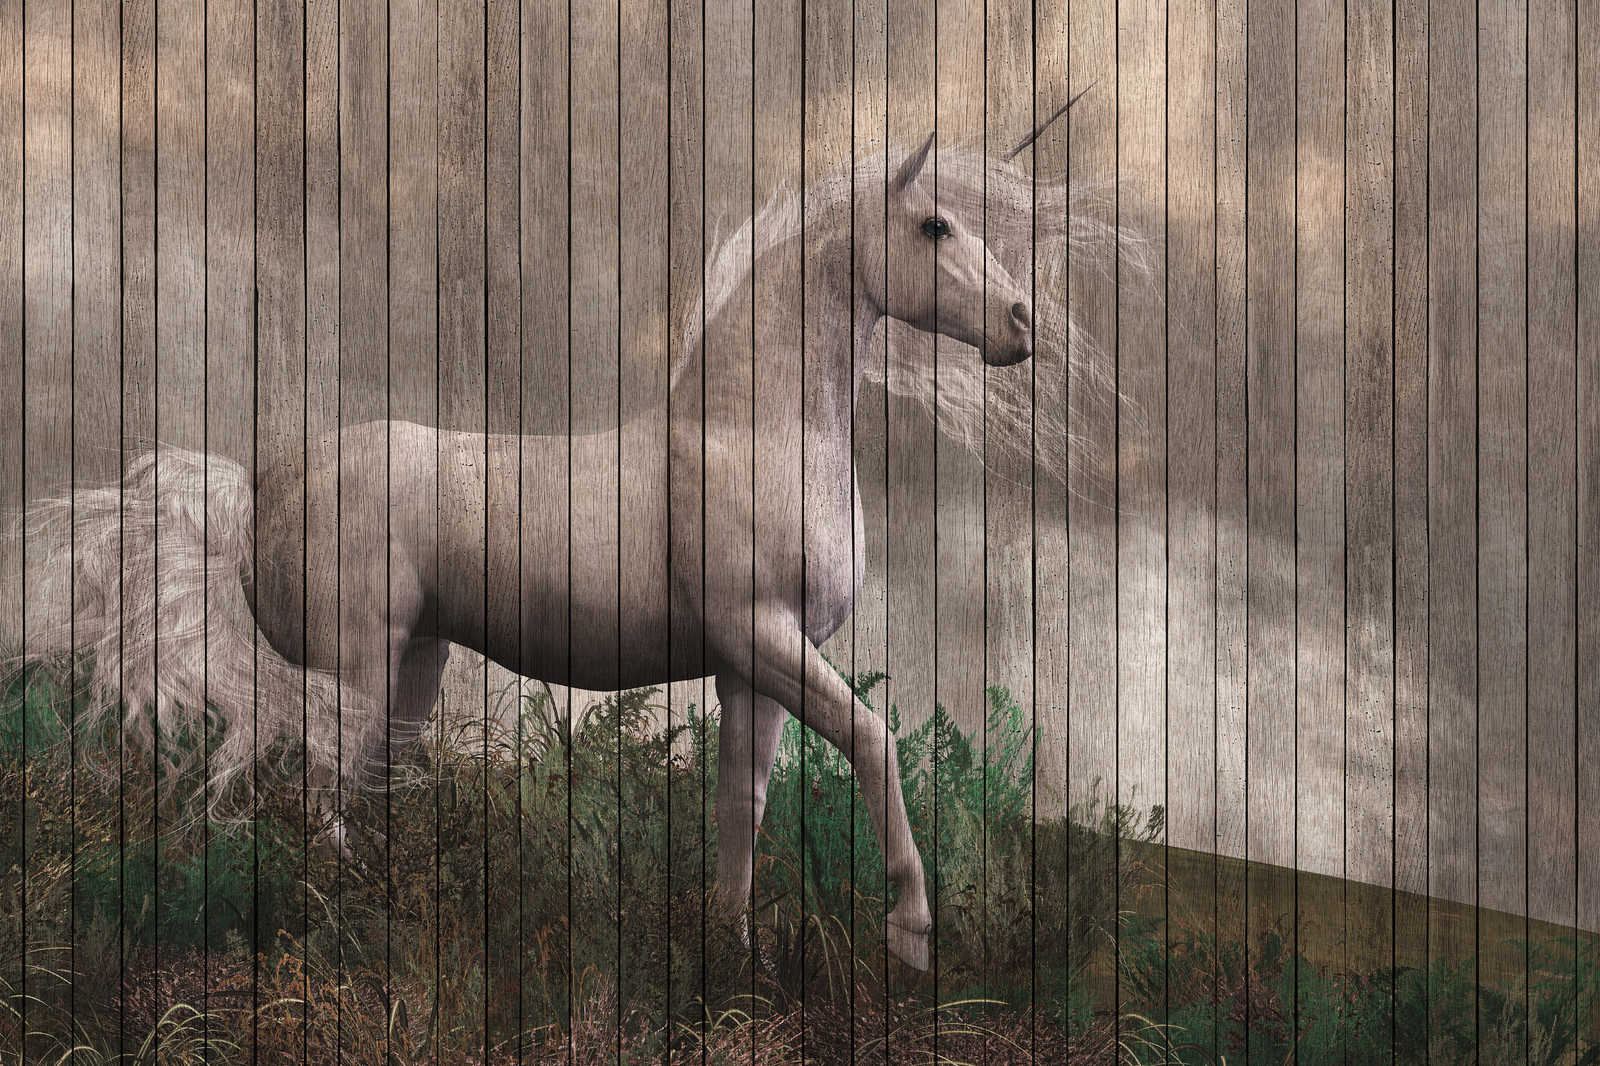             Fantasy 3 - toile licorne avec effet de planche de bois - 0,90 m x 0,60 m
        